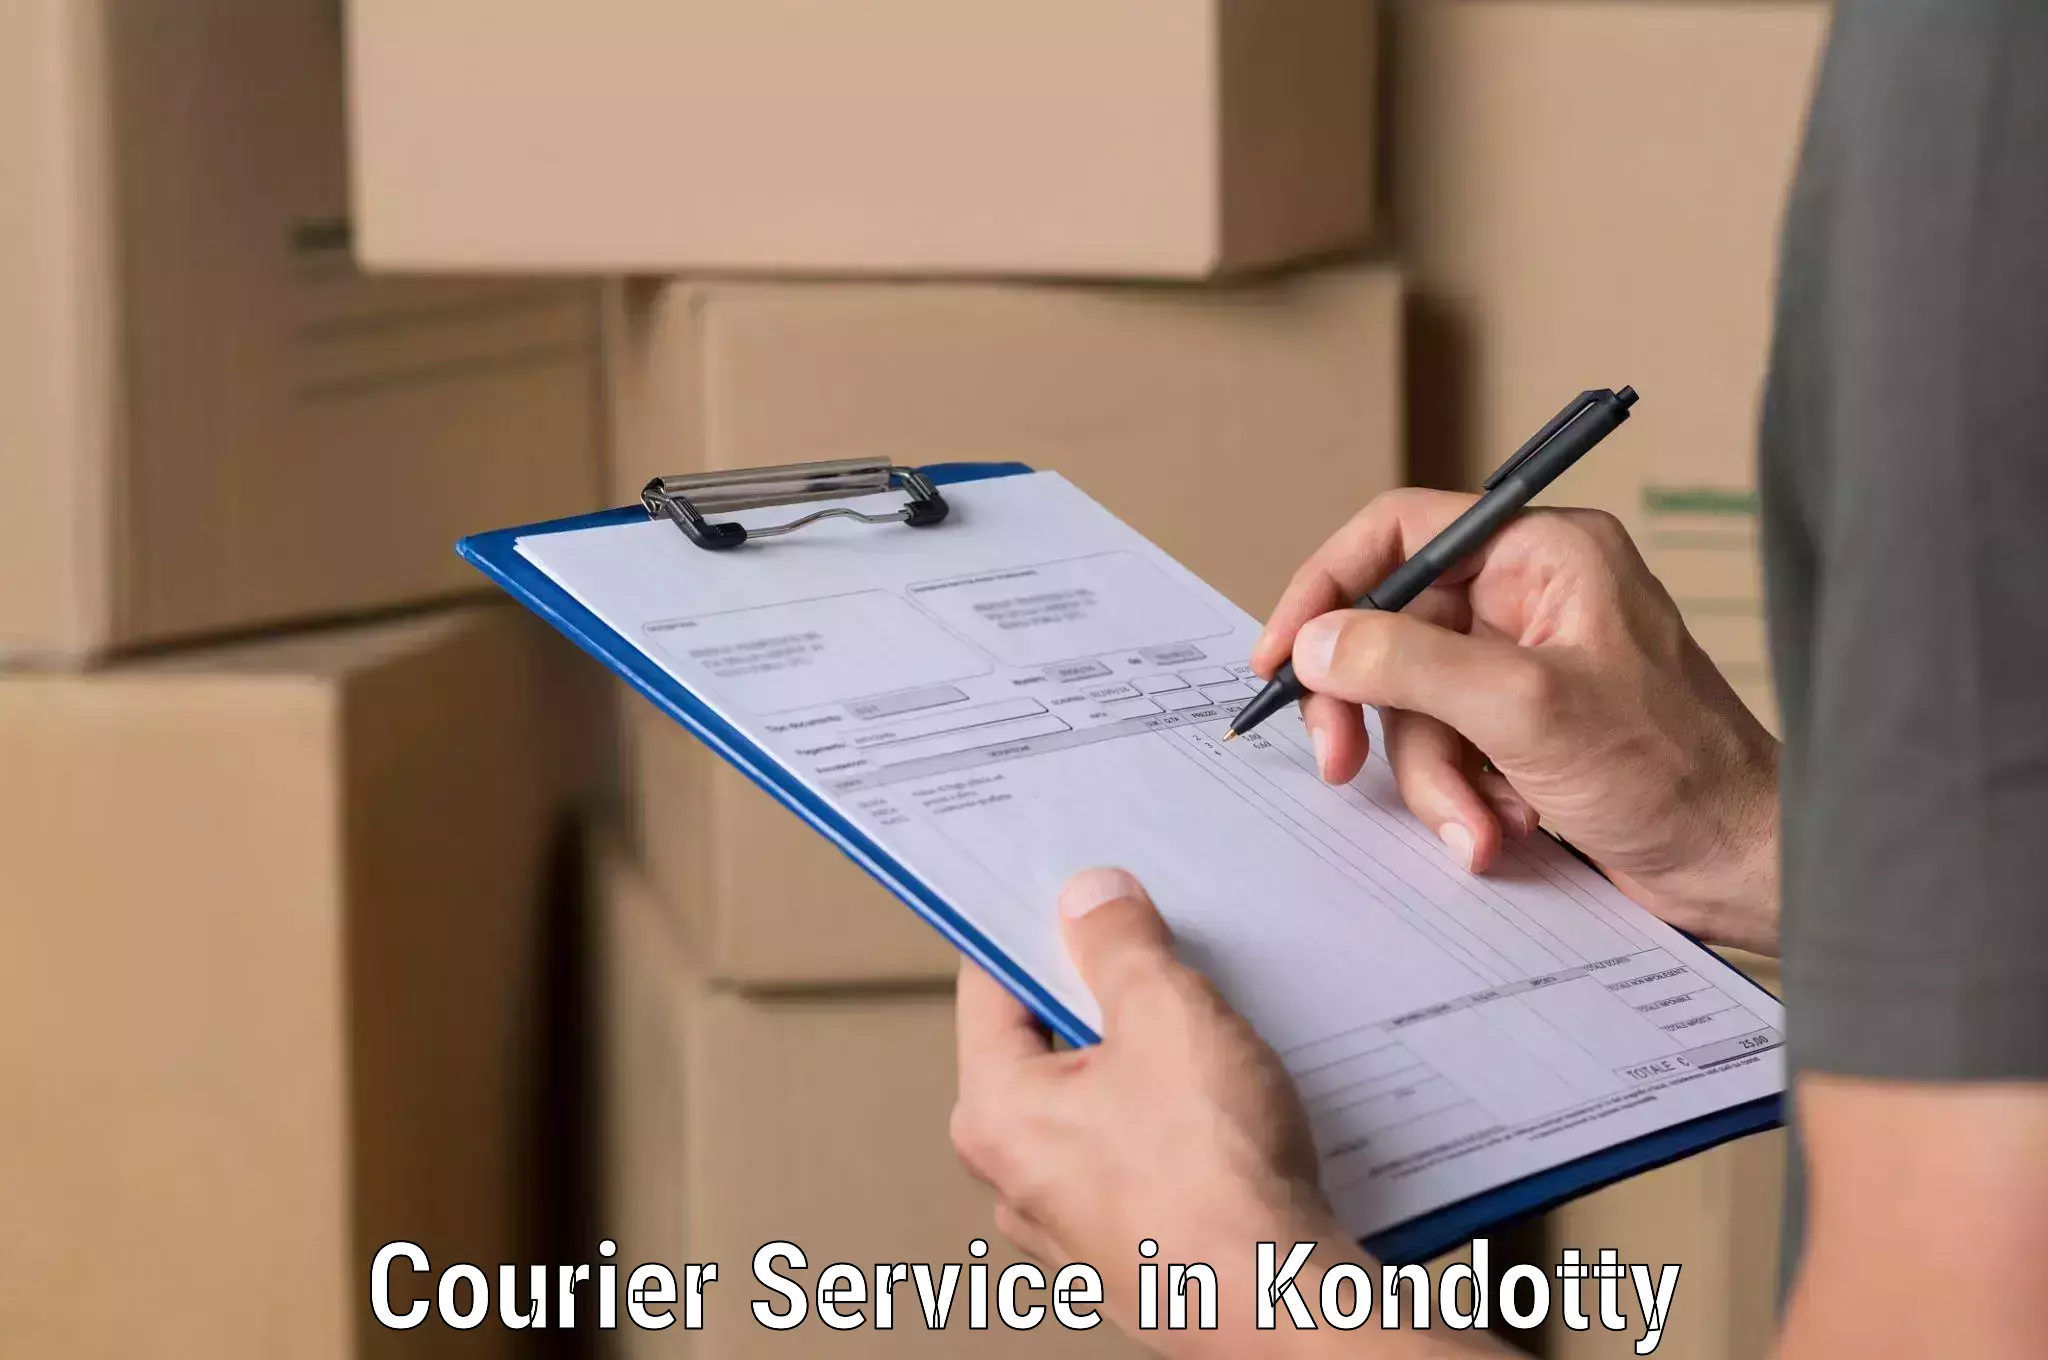 Courier service comparison in Kondotty